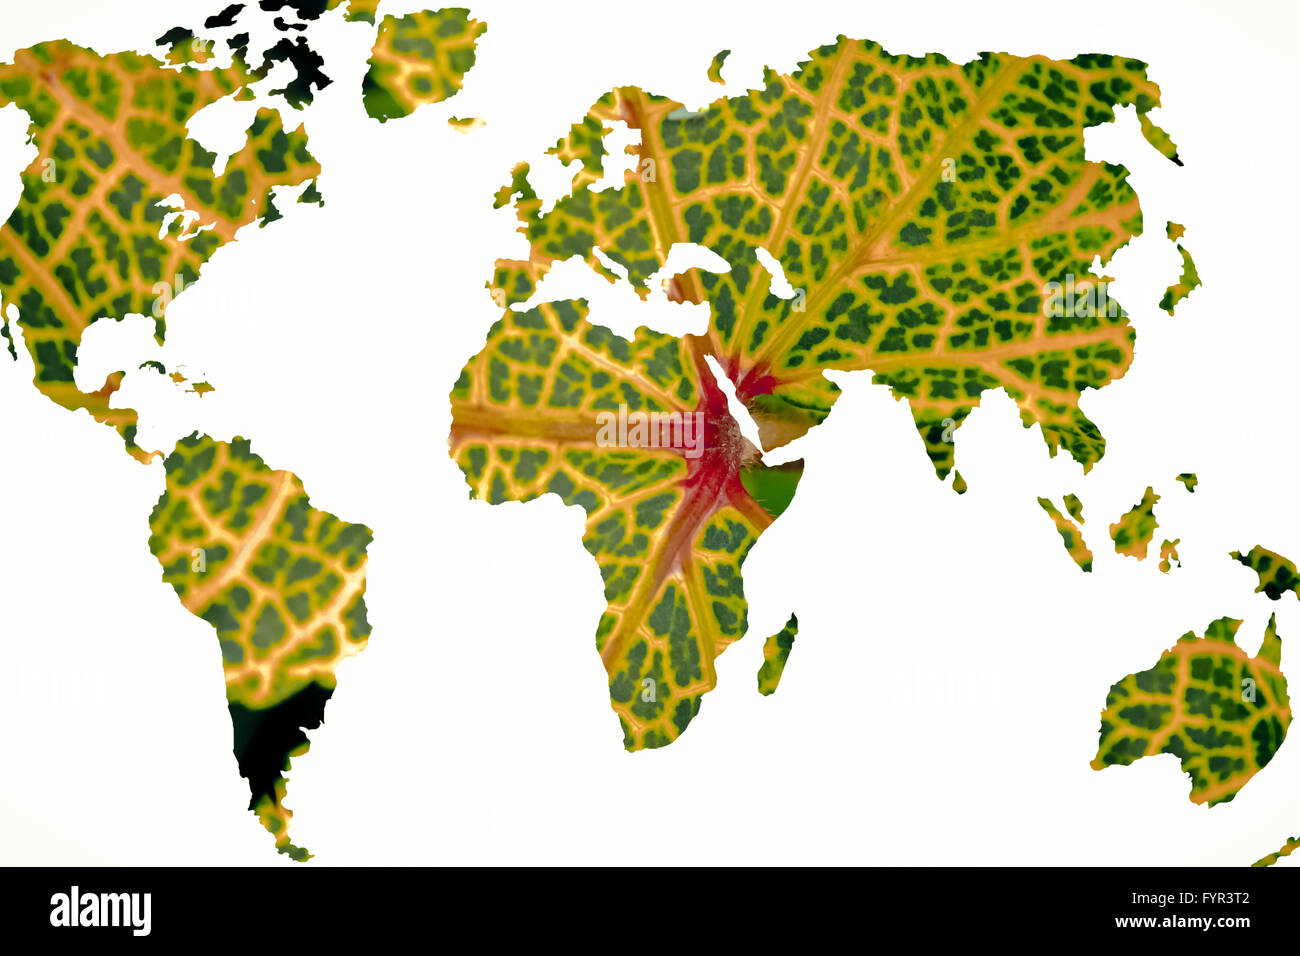 Welt Kartenvorlage mit Hintergrund Stockfoto